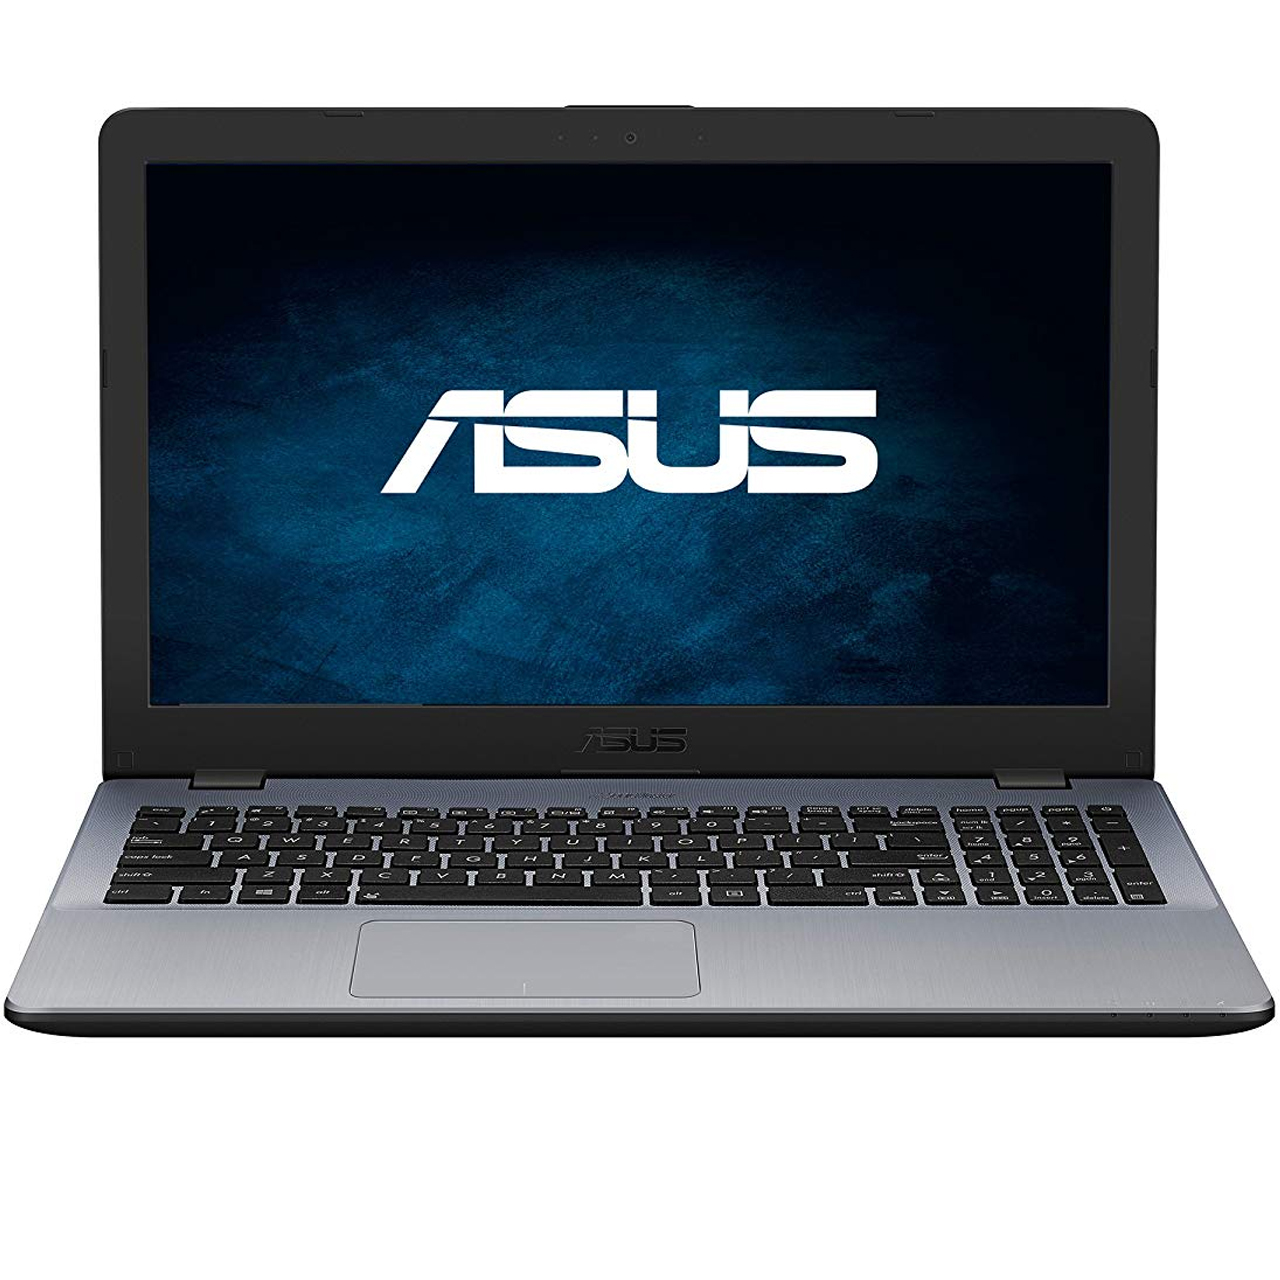 لپ تاپ 15 اینچی ایسوس مدل ASUS  VivoBook 15 K542UR-B